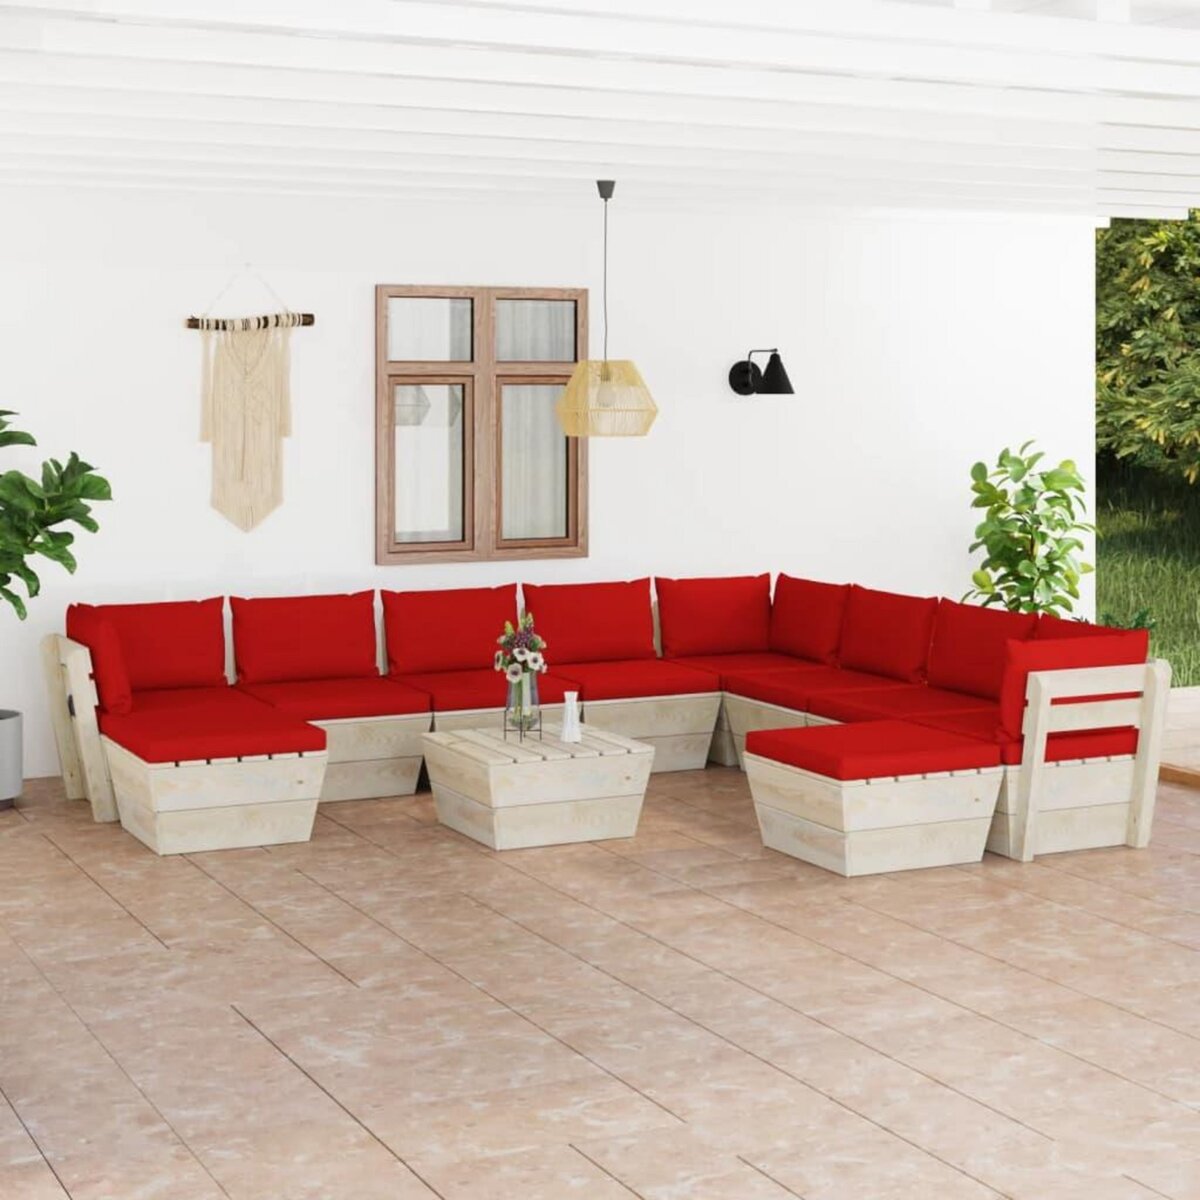 VIDAXL Salon de jardin palette 11 pcs avec coussins Epicea impregne